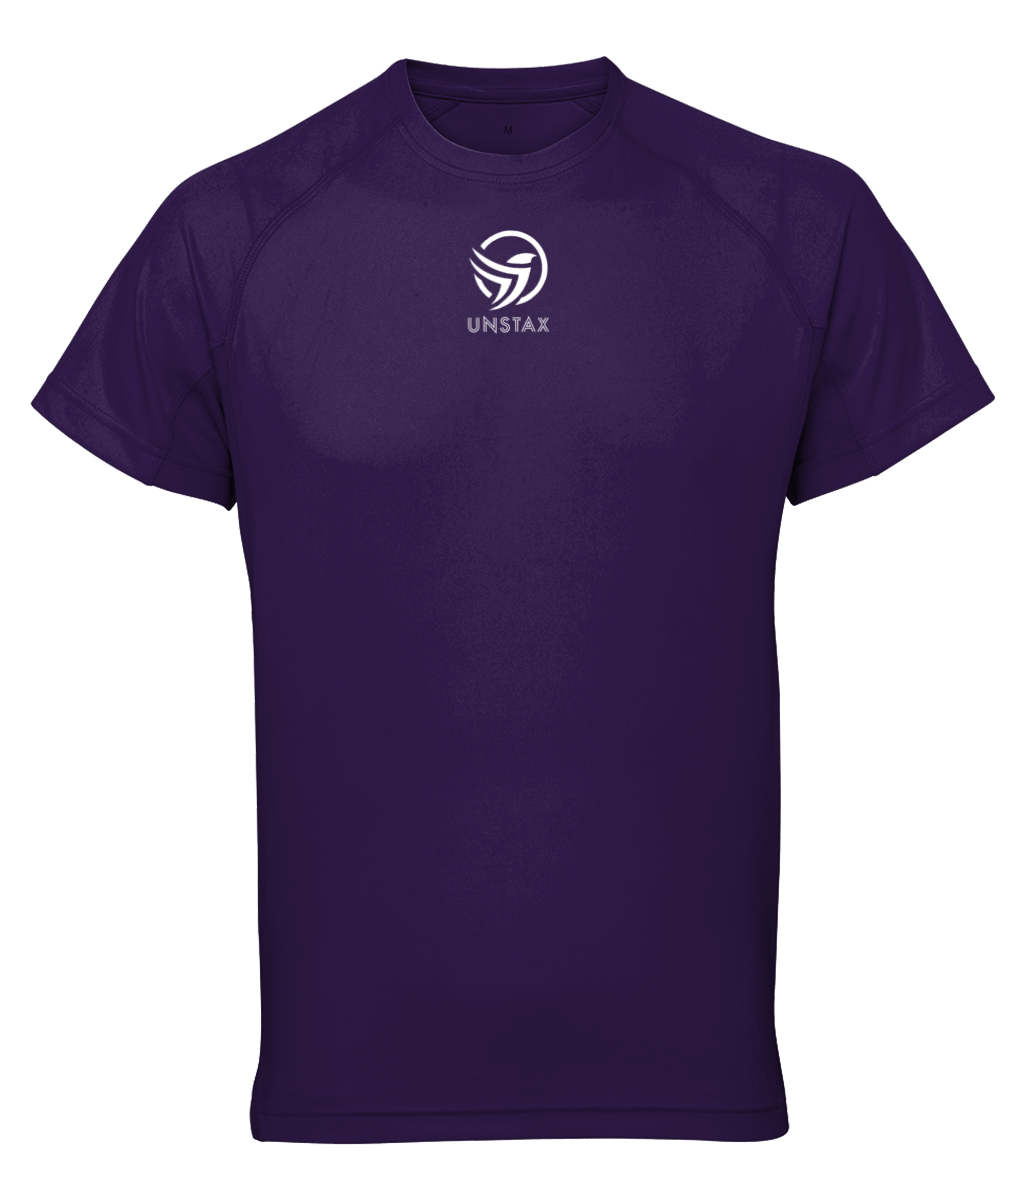 Unstax Dri-fit Performance Women's T-Shirt